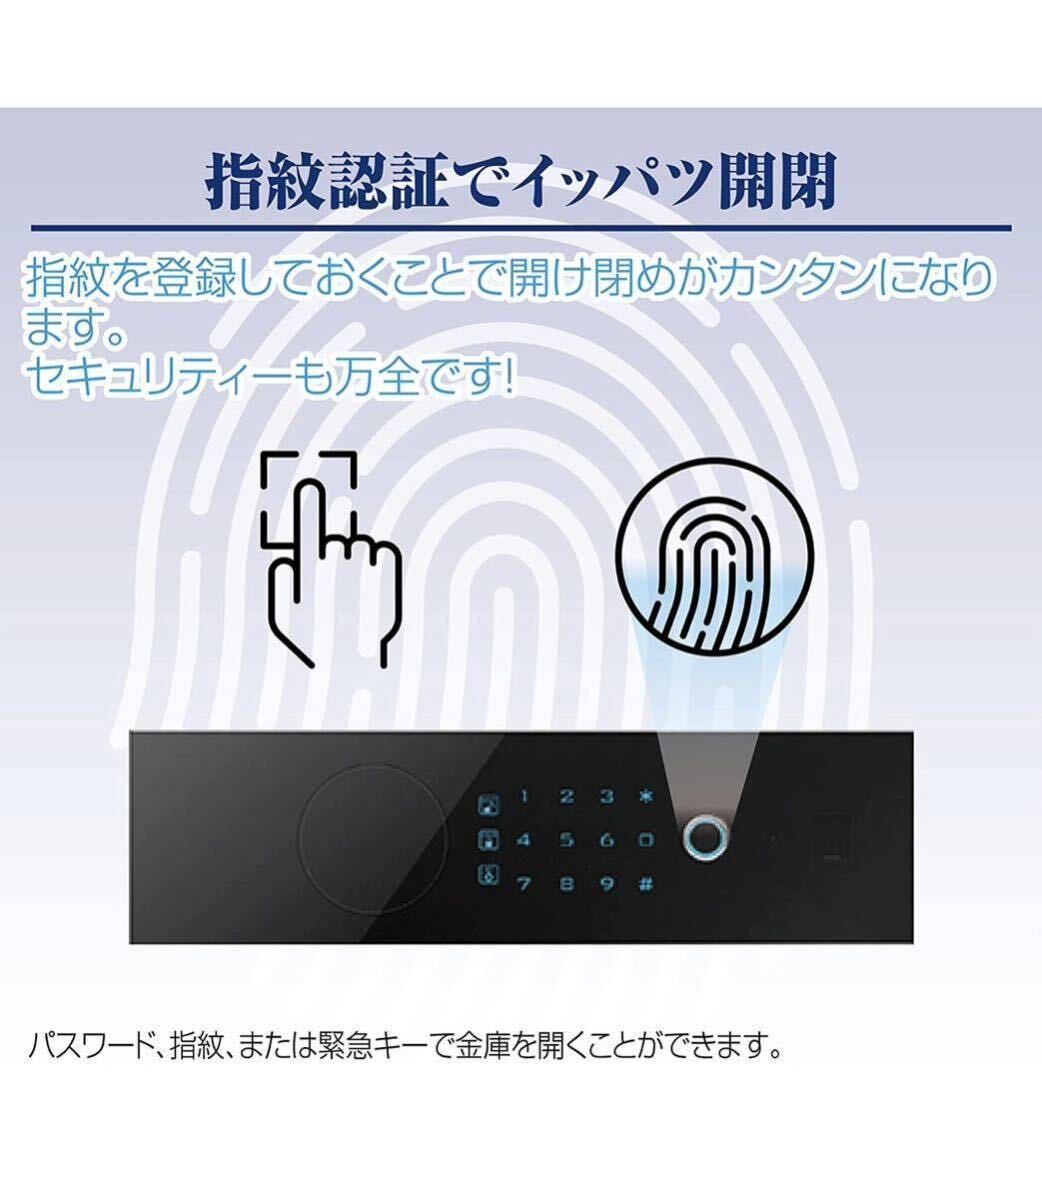  price cut beautiful goods electron safe touch panel fingerprint authentication (45cm,.)